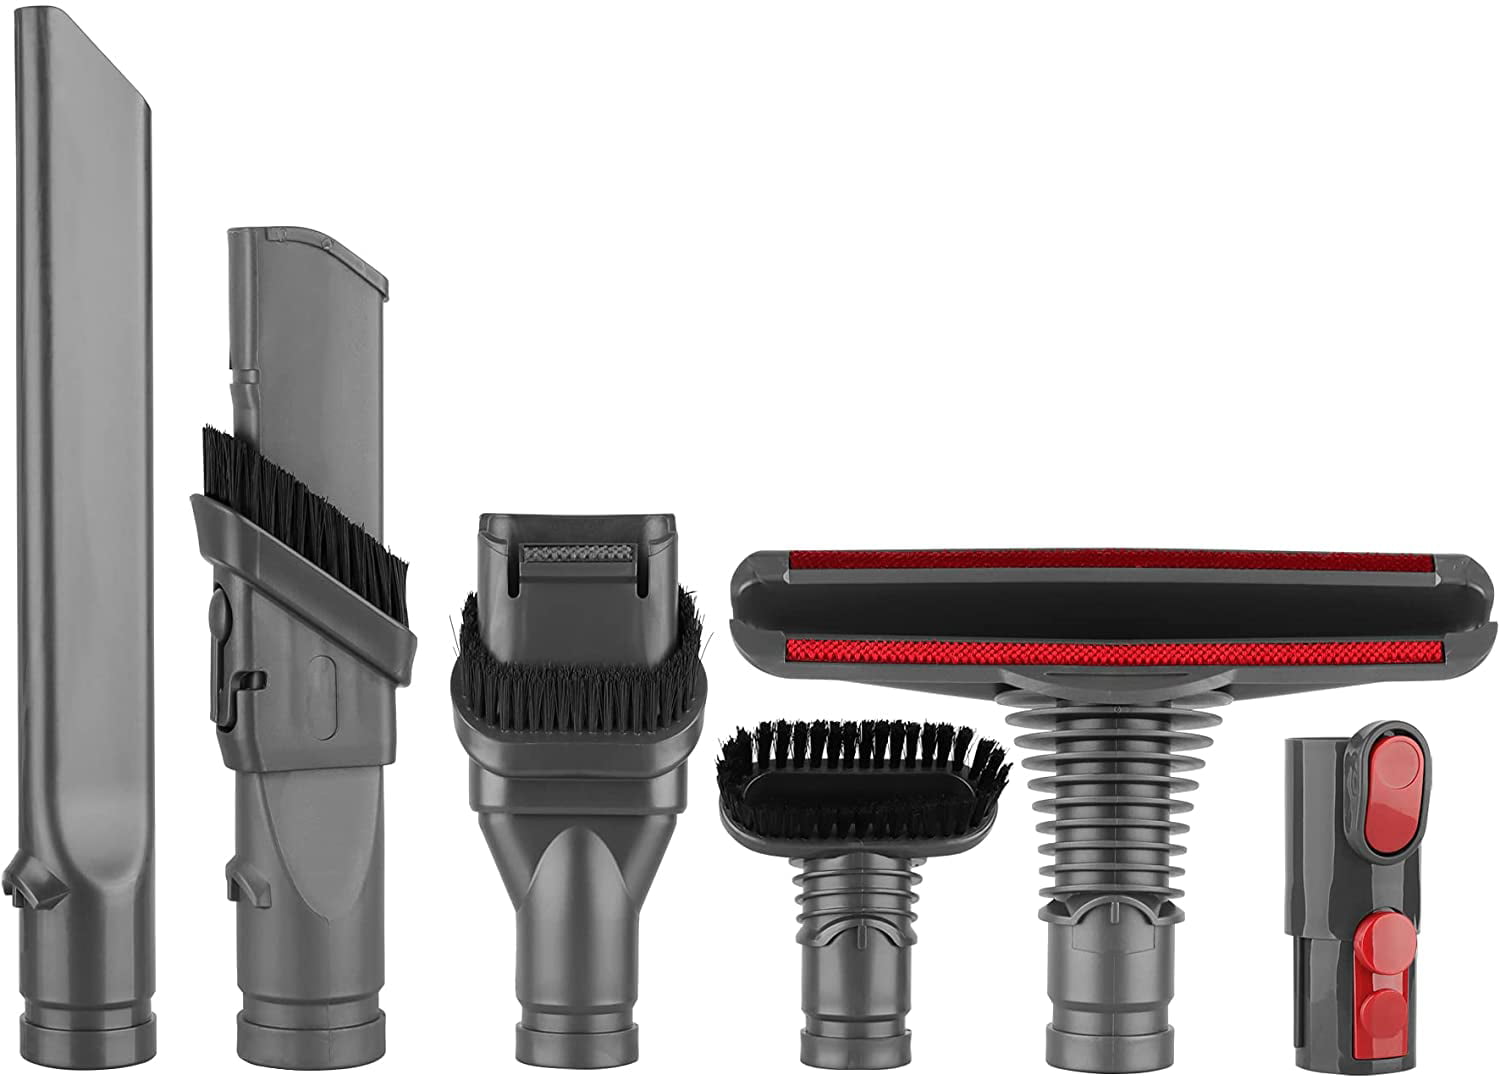 Accessoires pour kit de brosse pour aspirateur Dyson Maroc